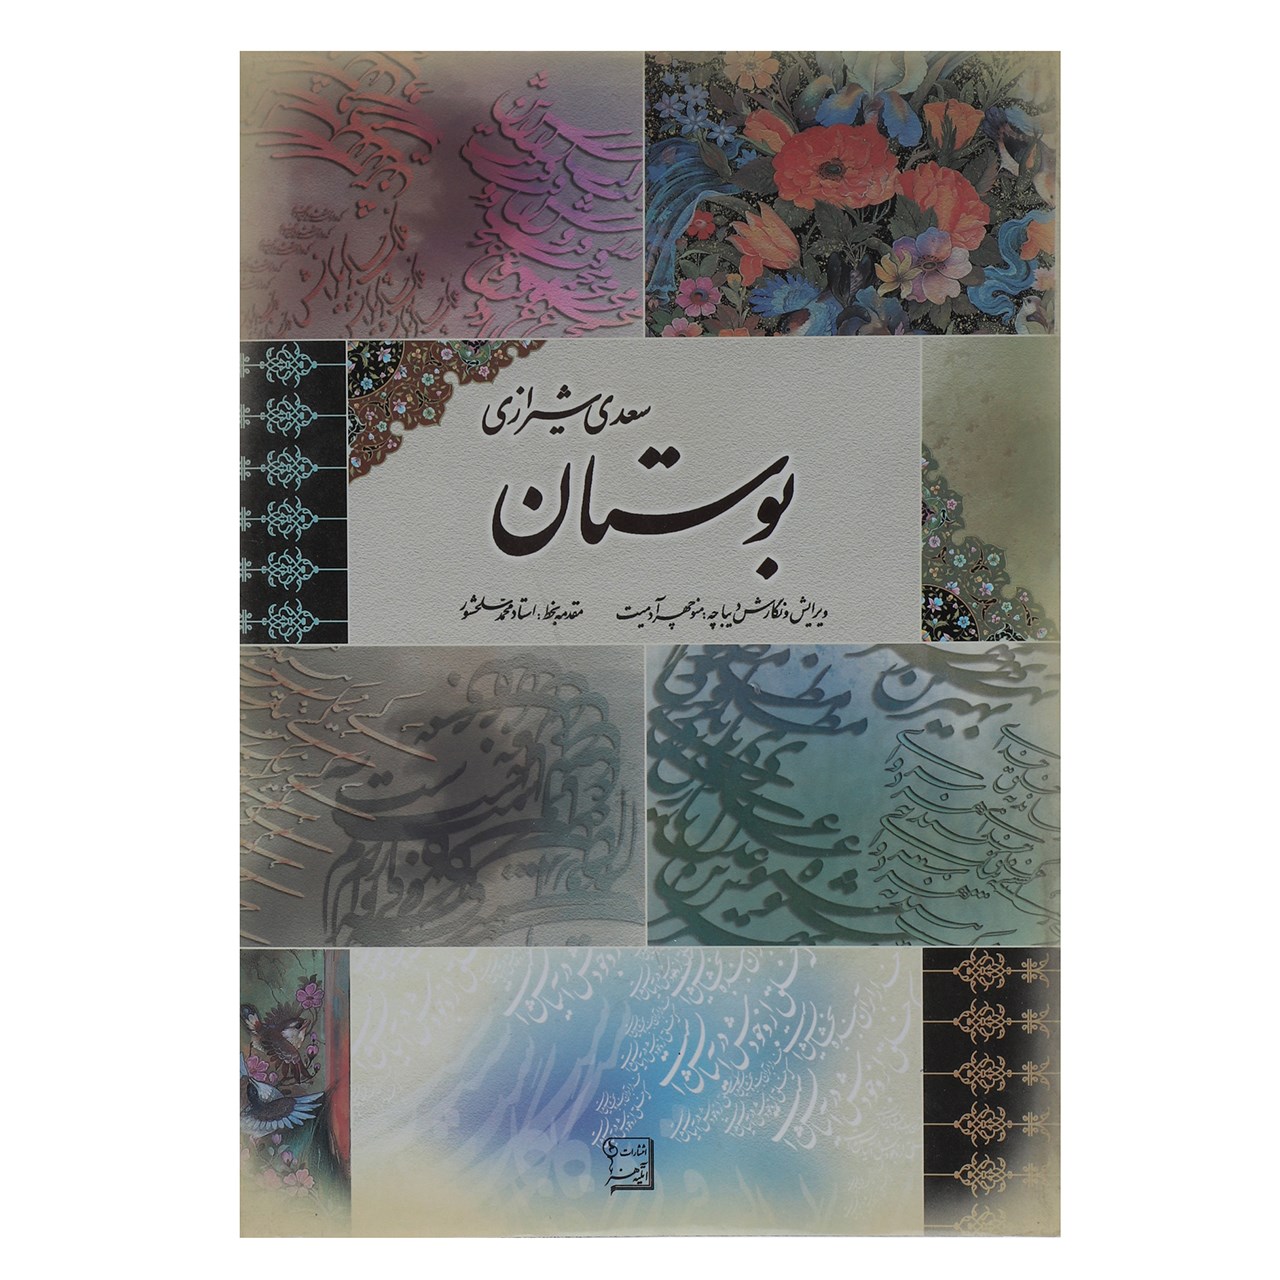 کتاب بوستان سعدی اثر مصلح بن عبدالله سعدی شیرازی